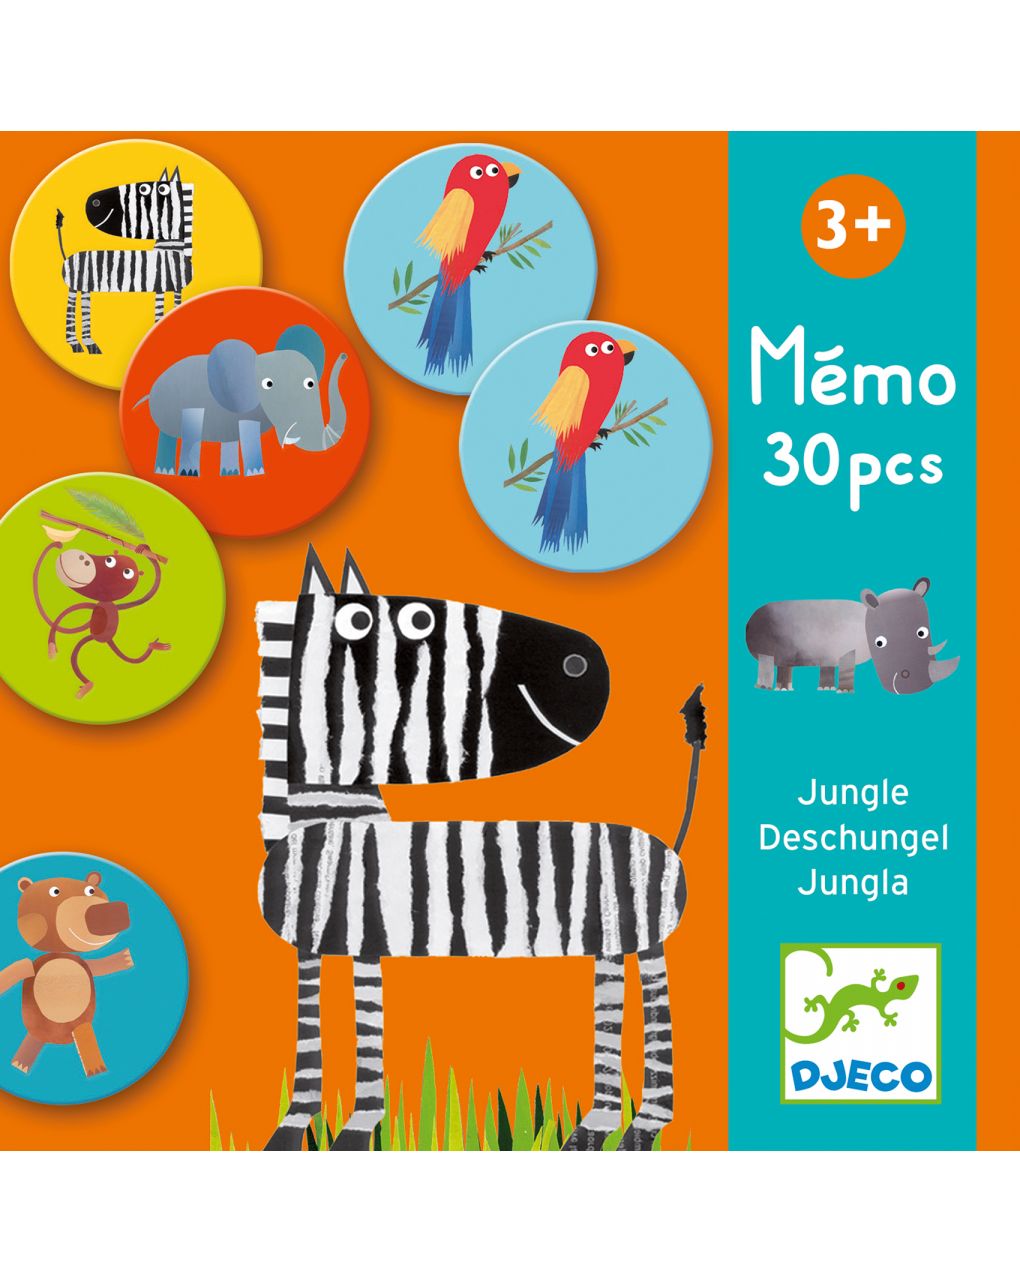 Memo jungle 30 elementos - djeco - Djeco